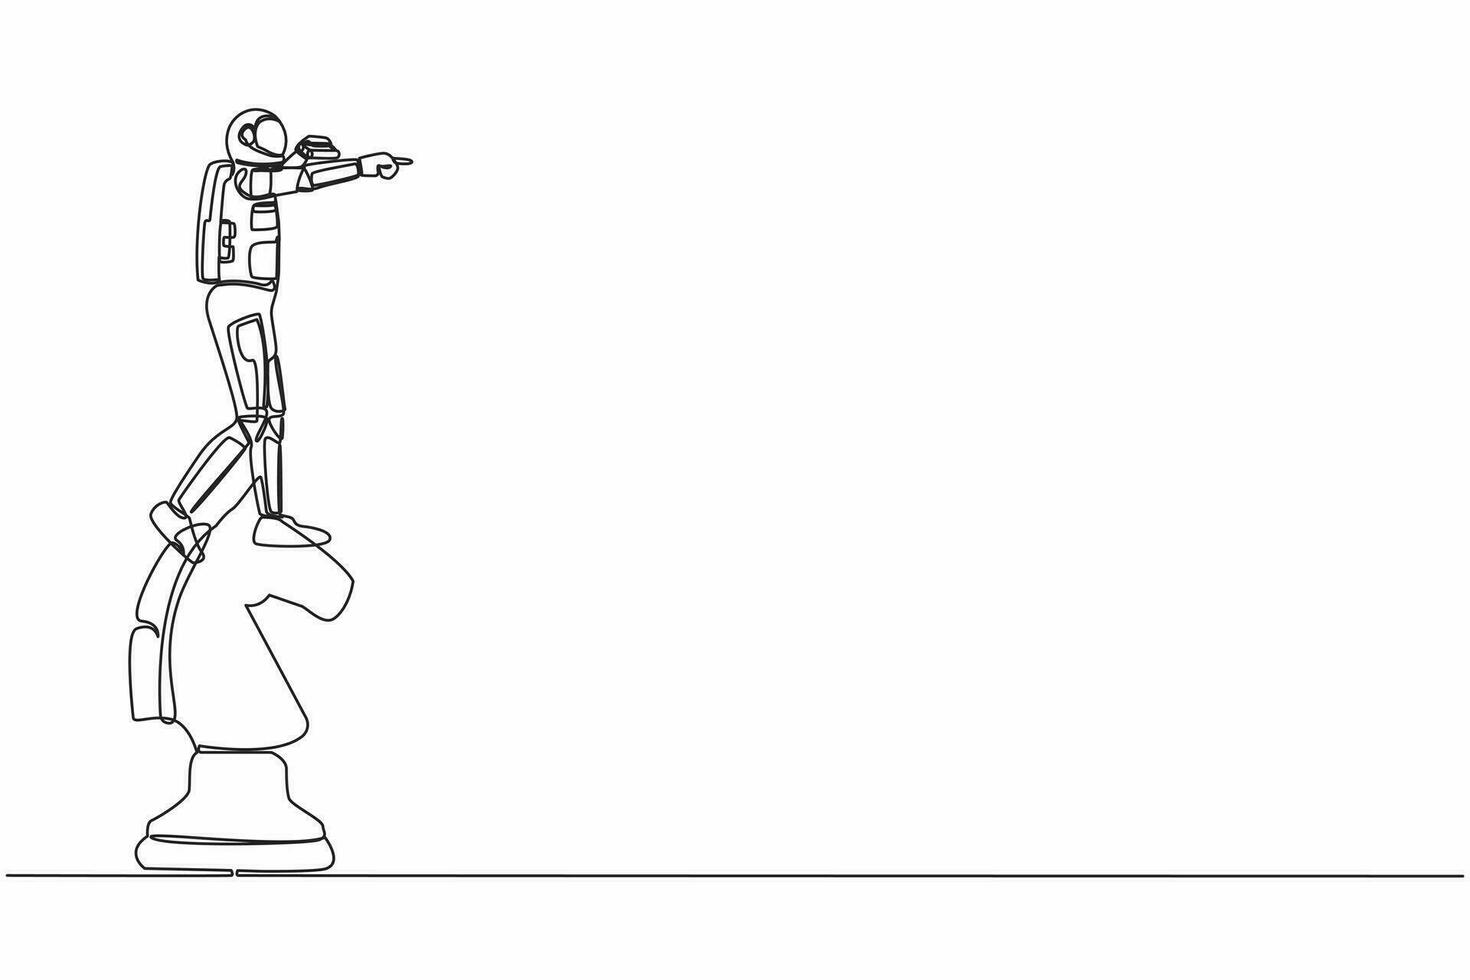 soltero continuo línea dibujo joven astronauta en parte superior grande caballo ajedrez pedazo utilizando binocular. mirando para nuevo expedición. cosmonauta profundo espacio concepto. uno línea dibujar gráfico diseño vector ilustración